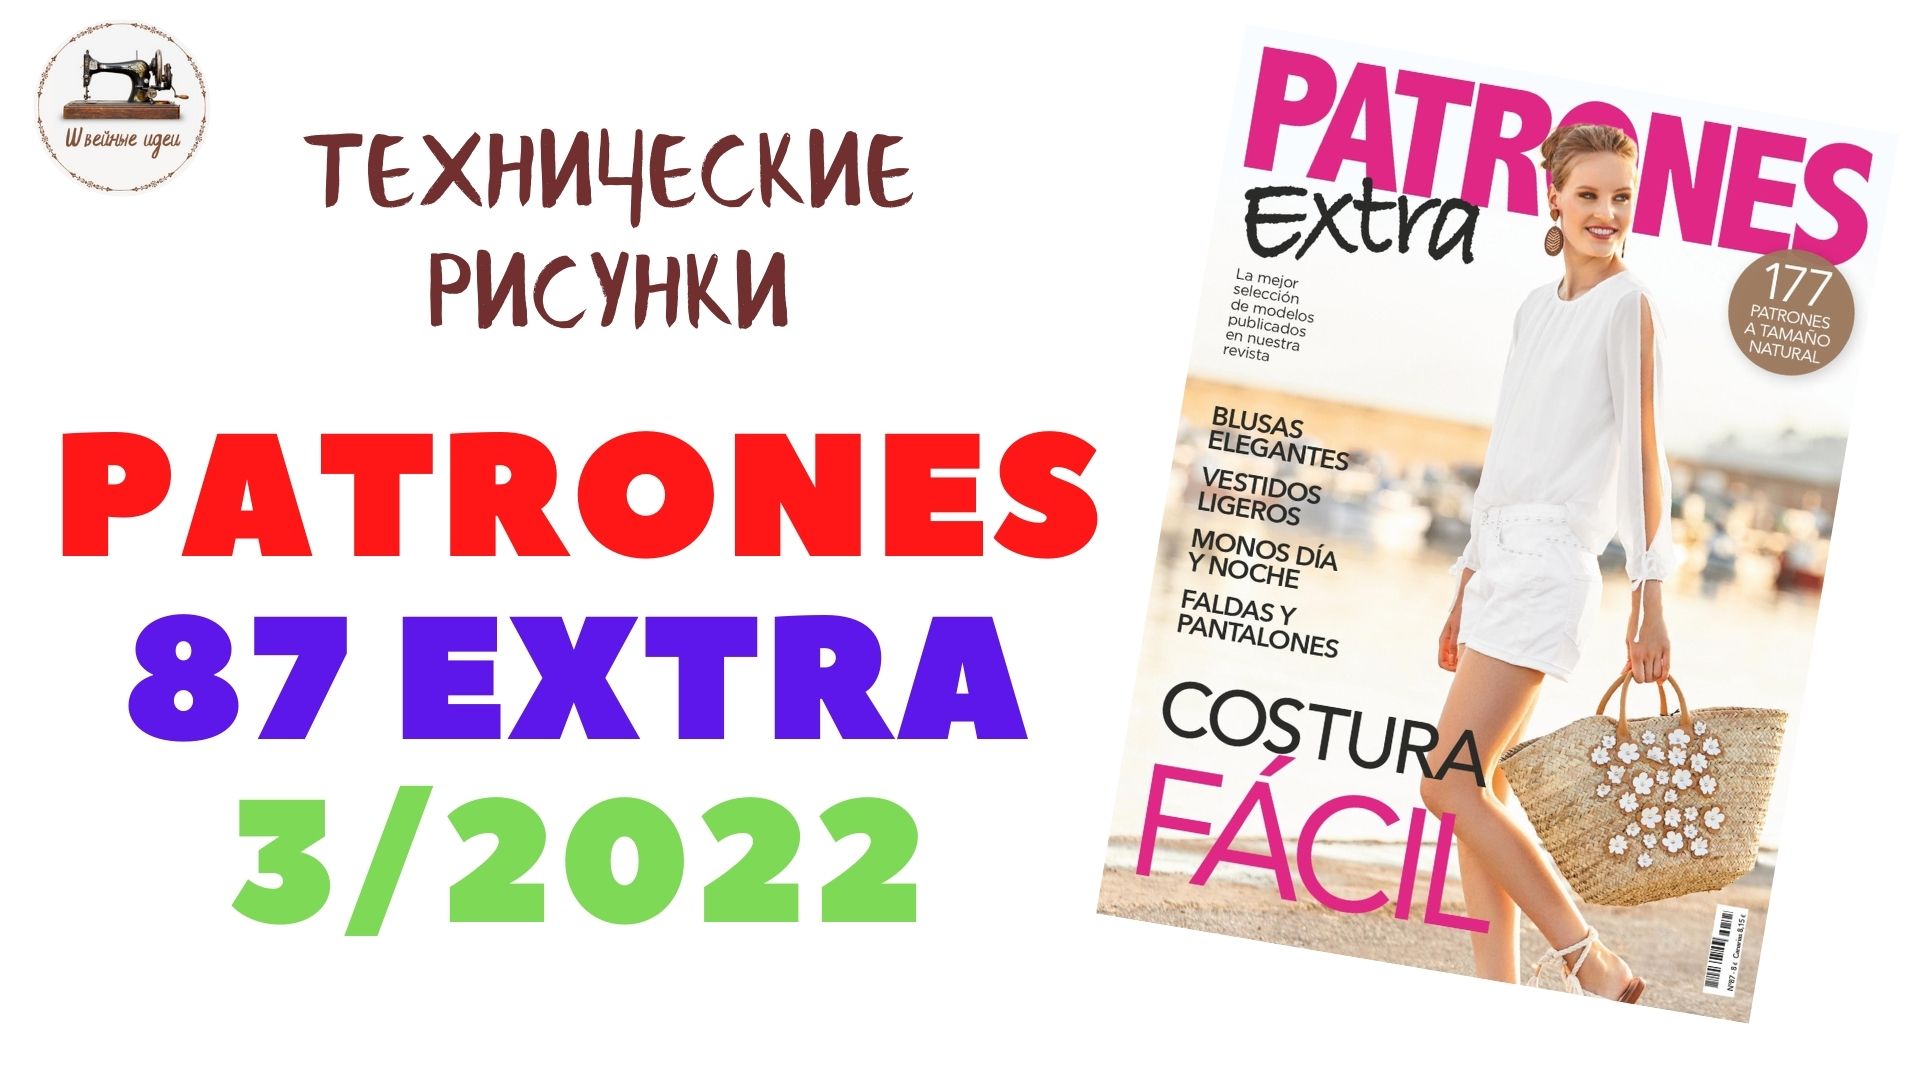 PATRONES Extra 87 marth 2022 / Всё, что необходимо для летнего гардероба. Технические рисунки крупно